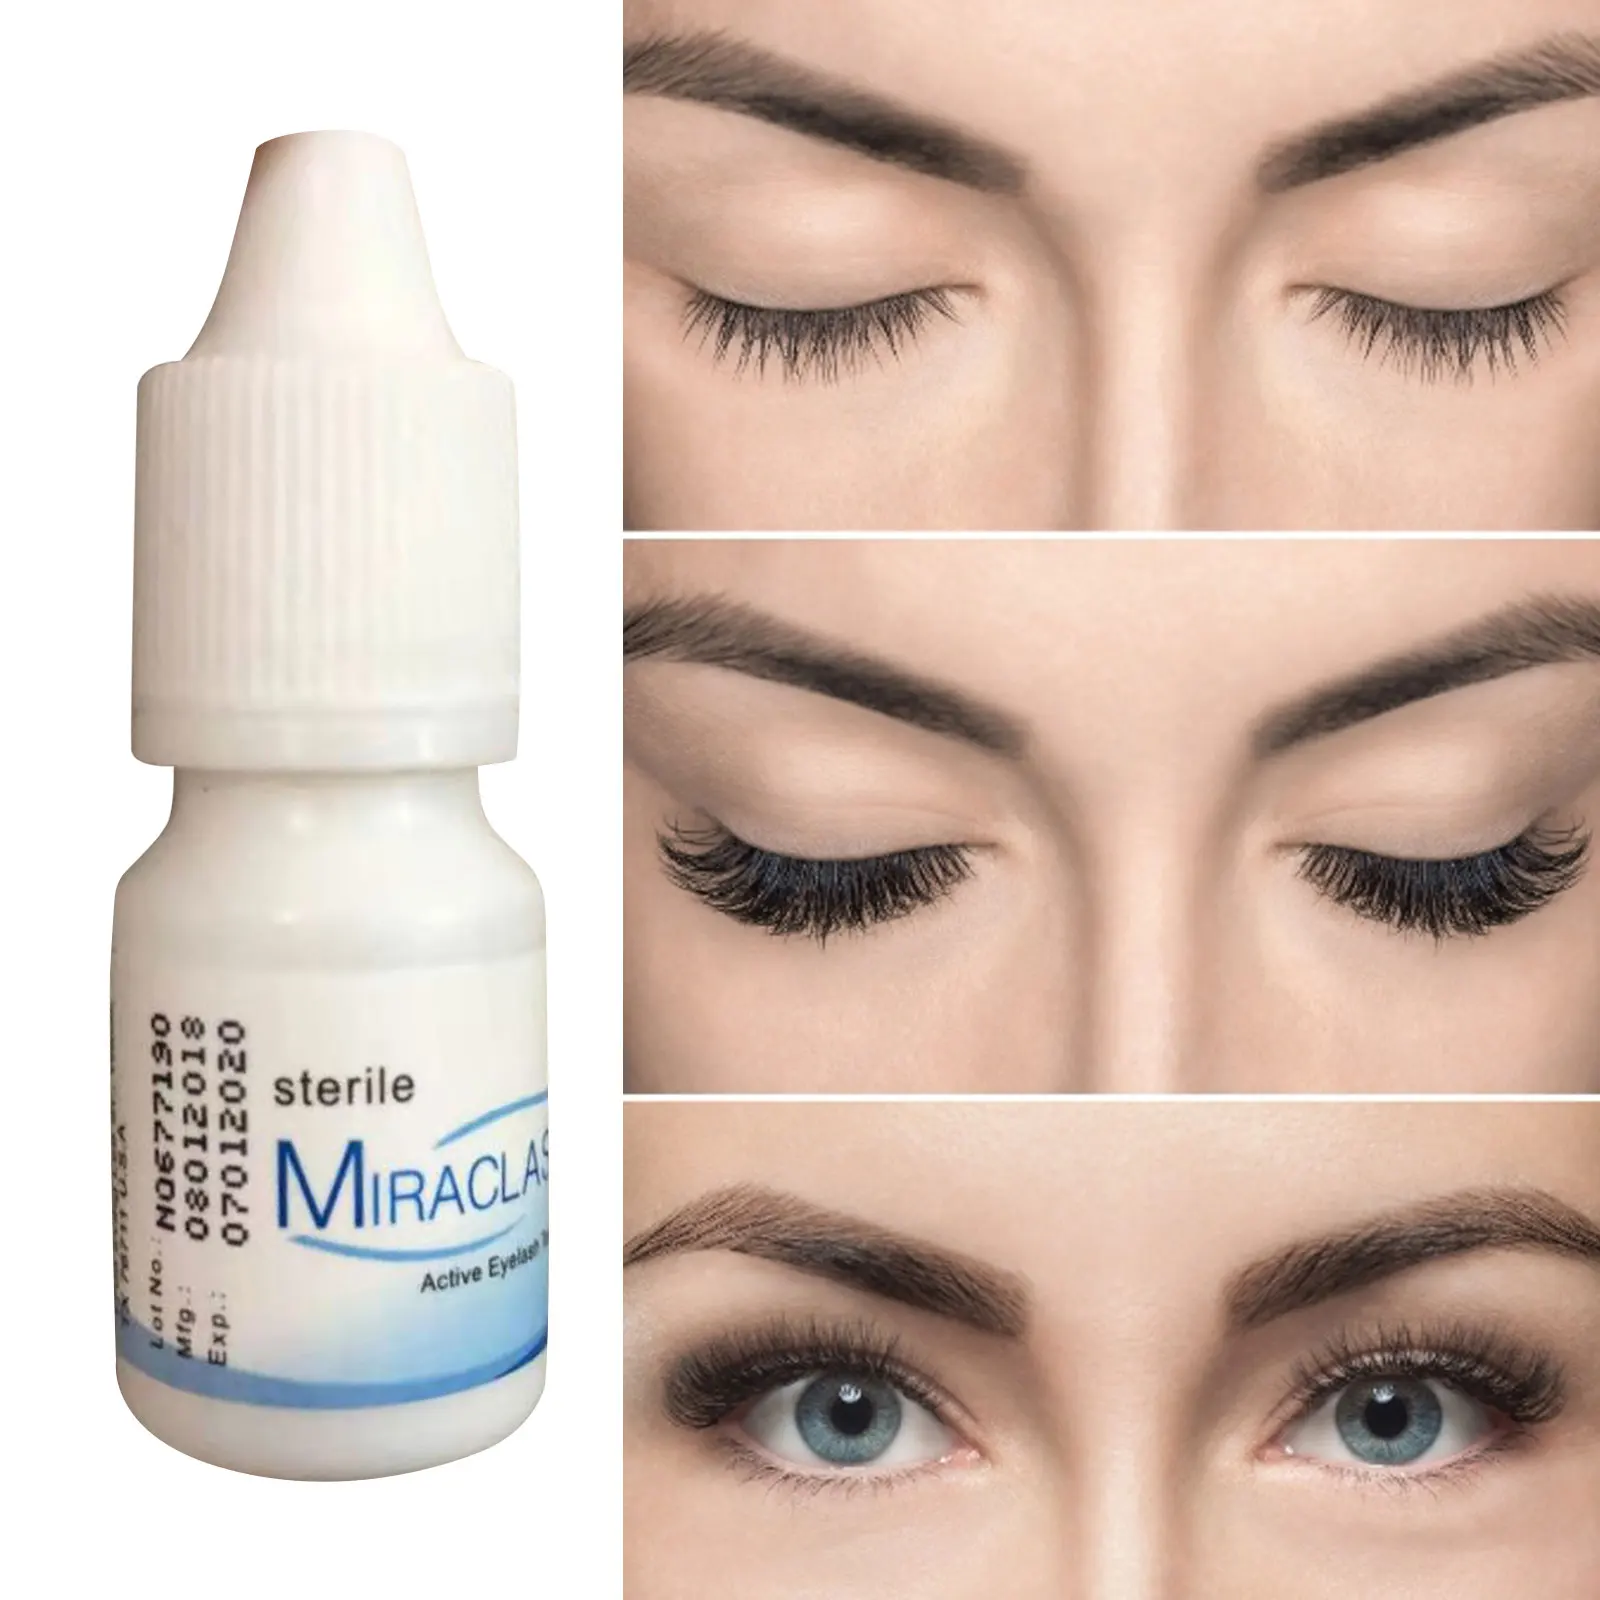 

7 Days Eyelash Growth Enhancer Eyelashes Longer Fuller Thicker Treatment Eye Lashes Serum Mascara Lengthening Eyebrow Growth